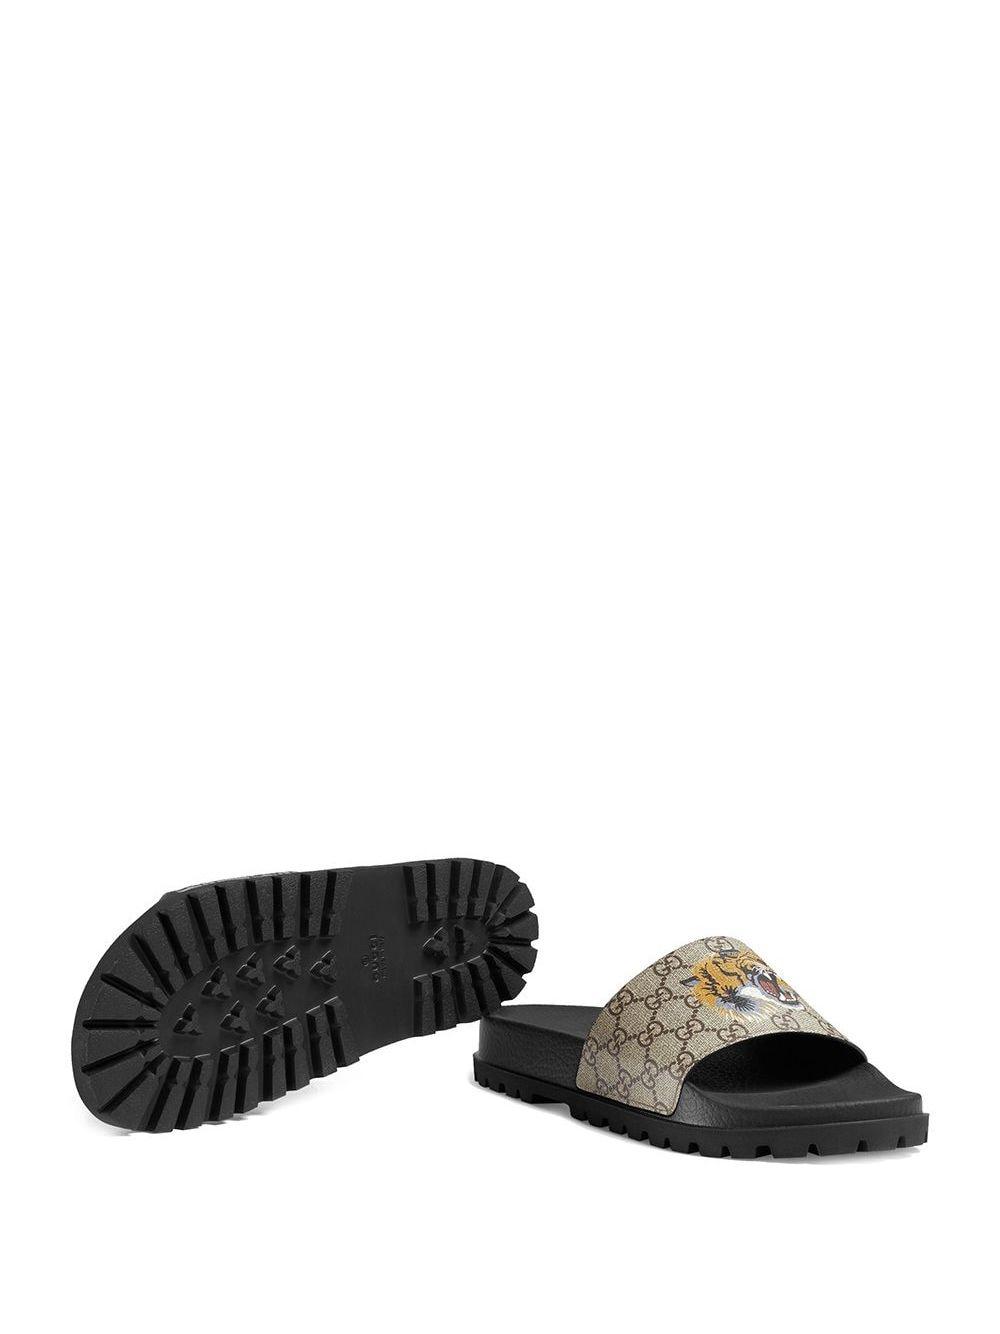 Gucci Canvas GG Supreme Tiger Slide Sandal in Brown for Men - Lyst